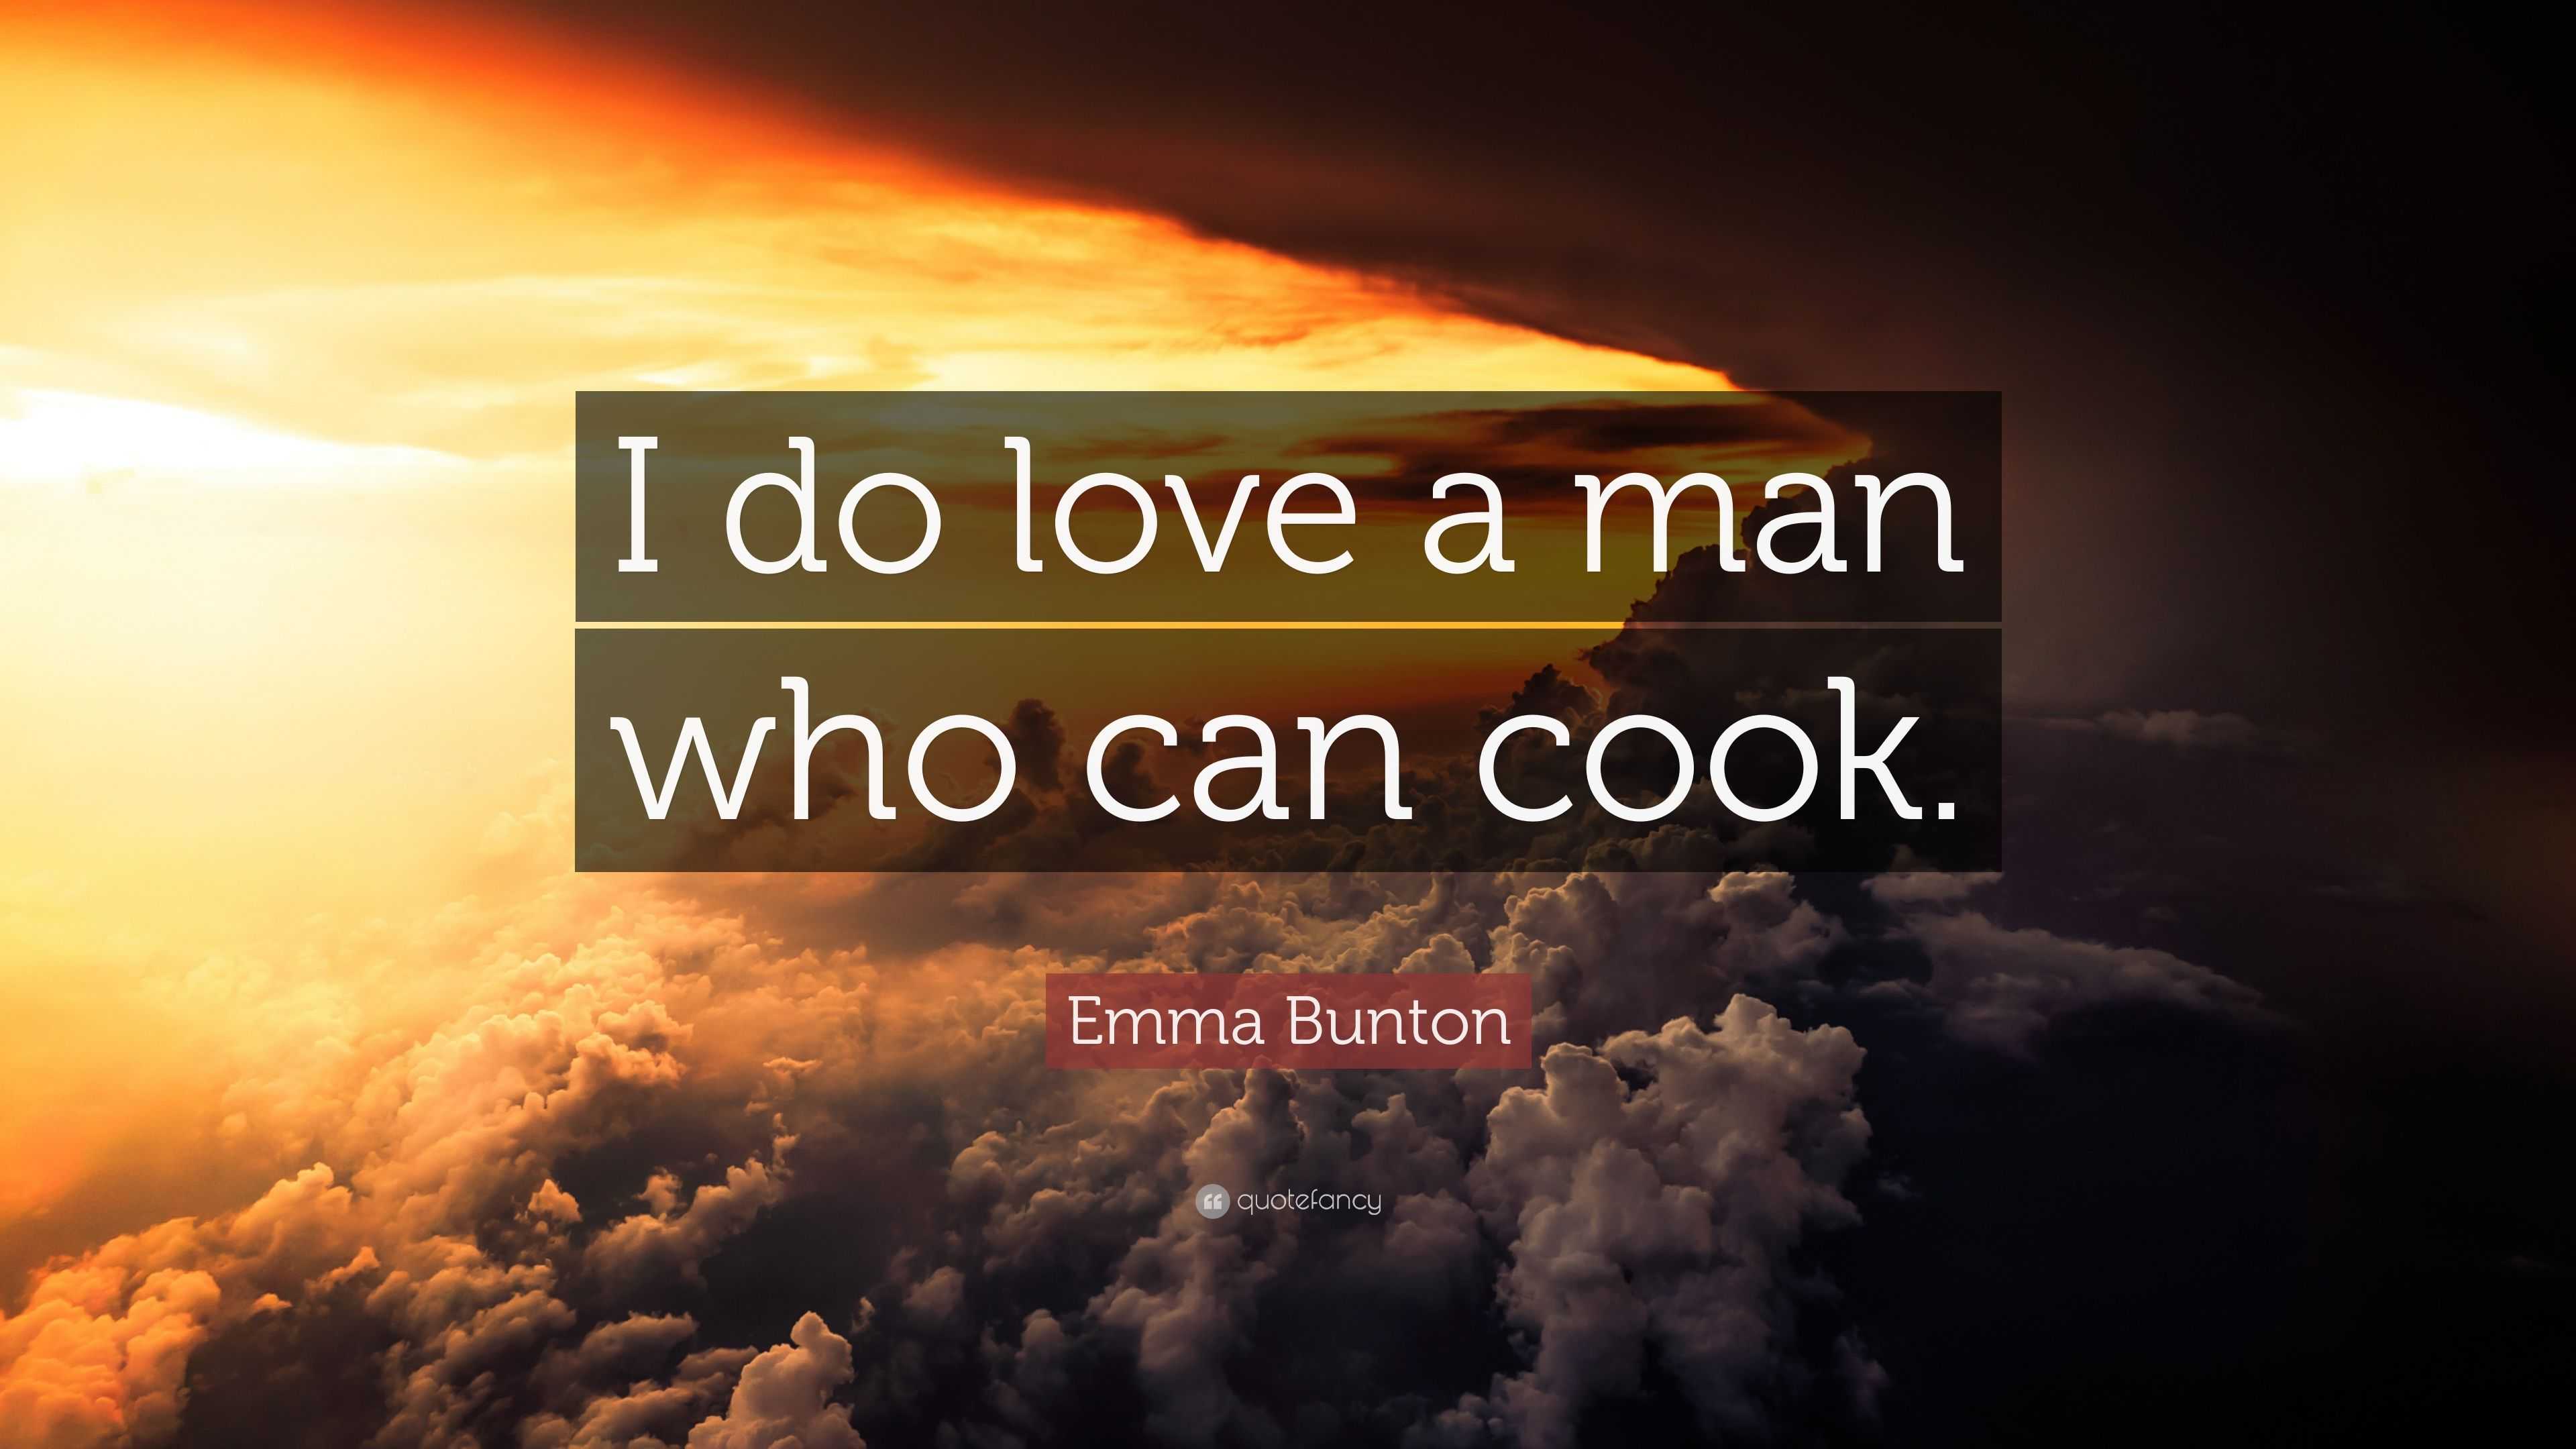 Emma Bunton Quote: “I do love a man who can cook.”